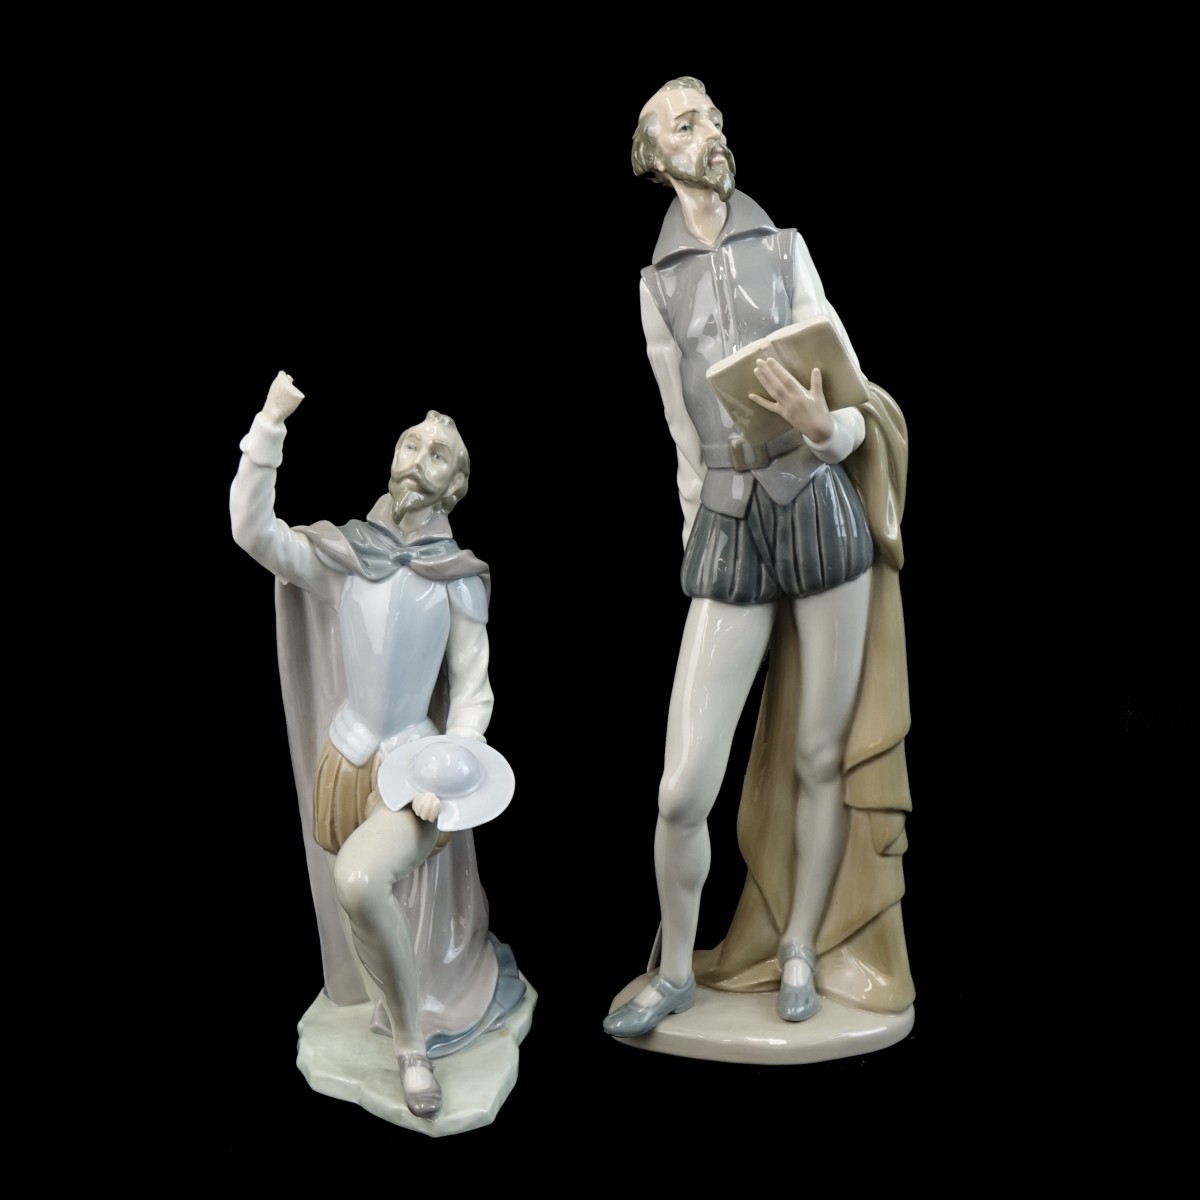 Two (2) Vintage Don Quixote Porcelain Figurines